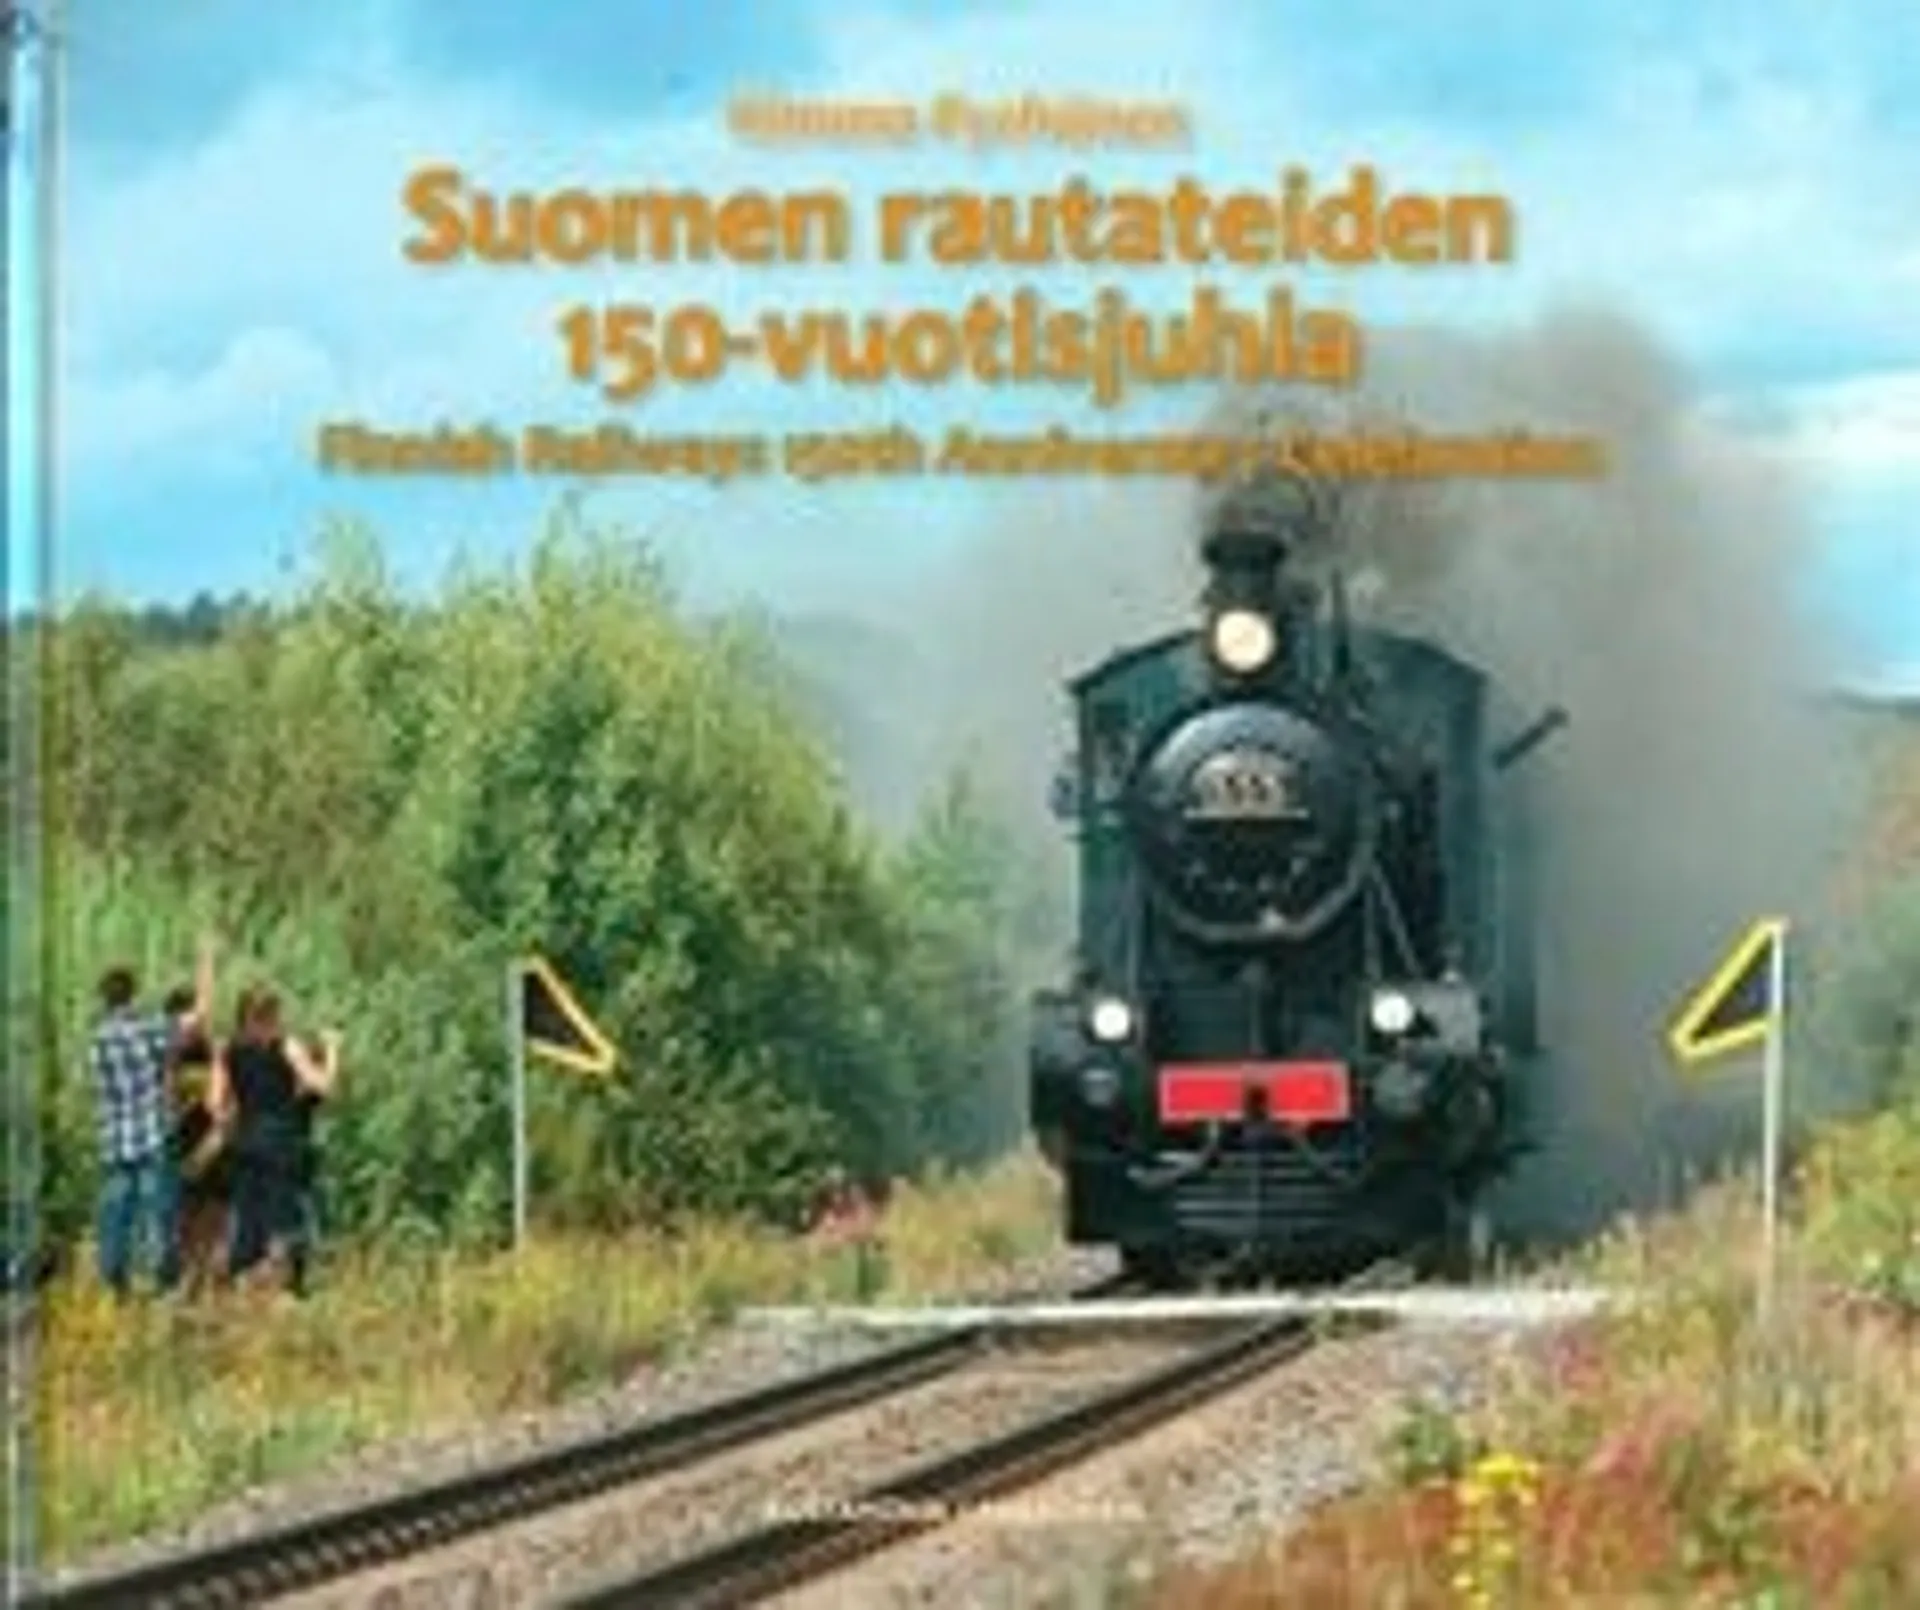 Pyrhönen, Suomen rautateiden 150-vuotisjuhla - Finnish Railways 150th Anniversary Celebration